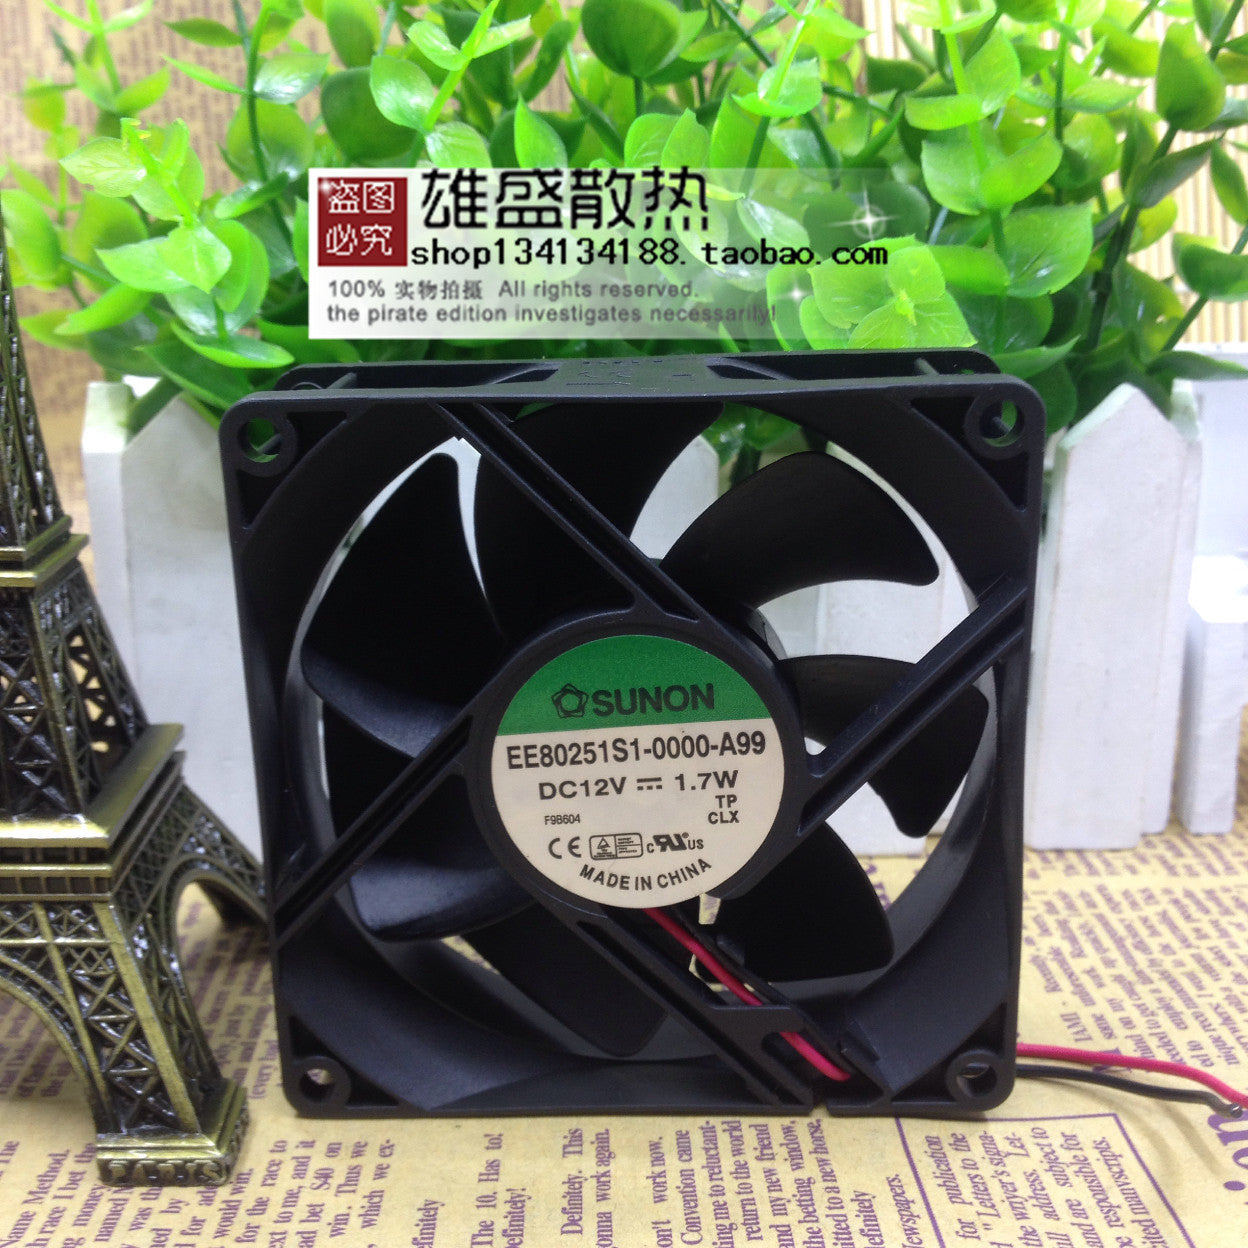 Sunon EE80251S1-0000-A99 12V 1.7W 8cm 8025 2-Wire Fan